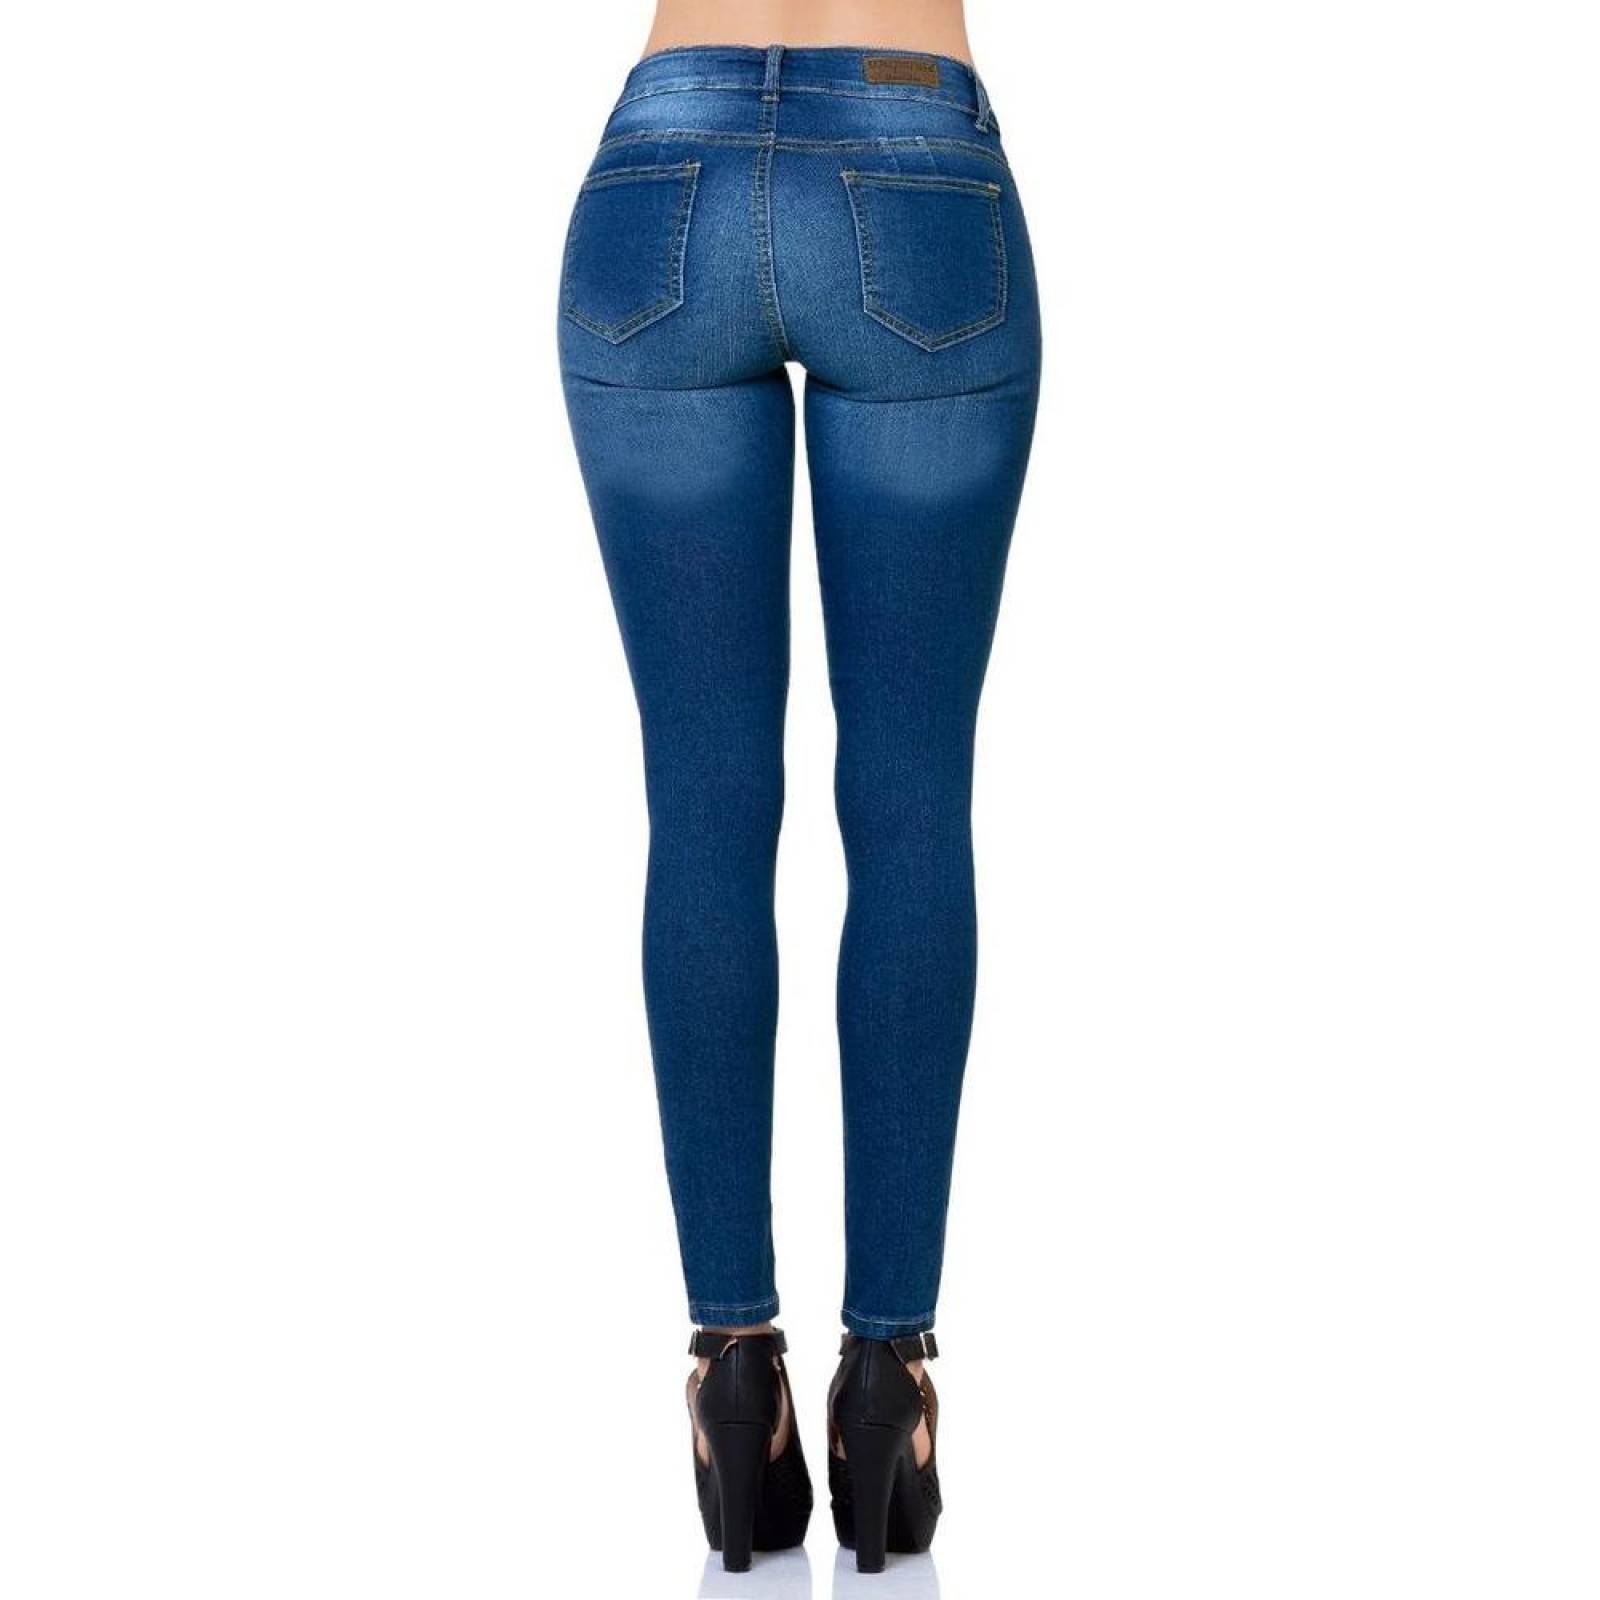 Jeans Básico Mujer Salvaje Tentación Stone 63100133 Mezclilla Stretch 